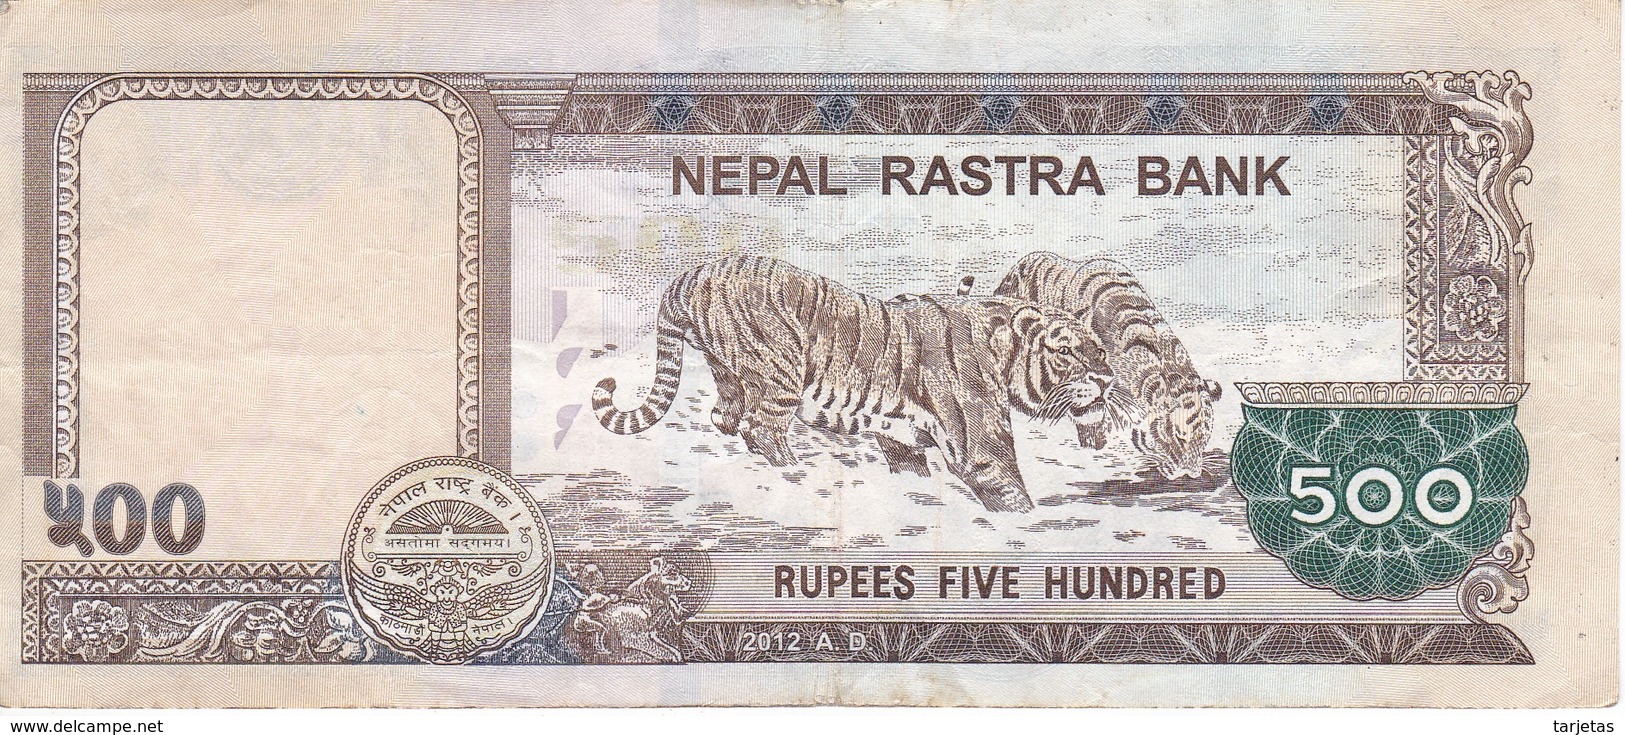 BILLETE DE NEPAL DE 500 RUPIAS DEL AÑO 2012 - TIGRE-TIGER (BANKNOTE) - Nepal